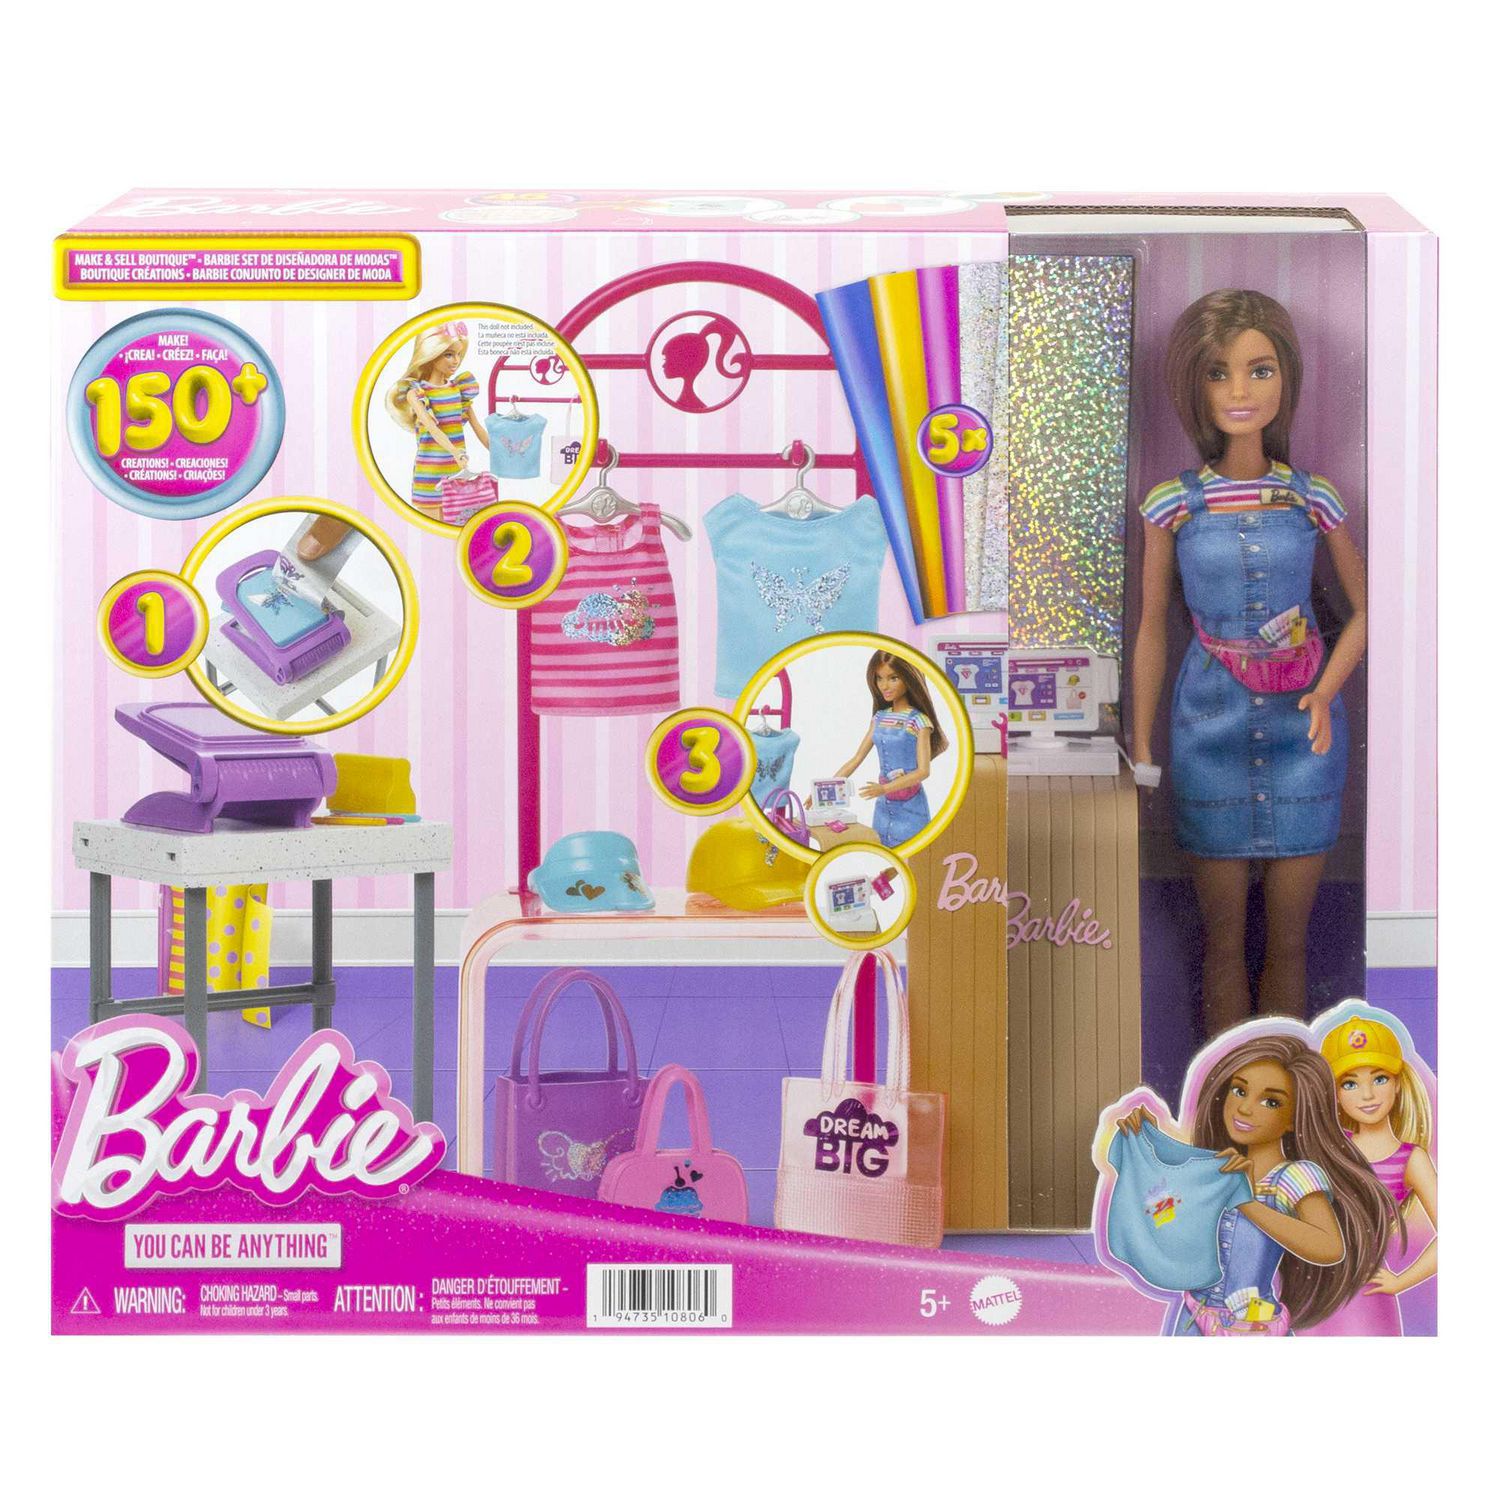 Guide des réserves naturelles du coffret de jeu Barbie Fashionistas